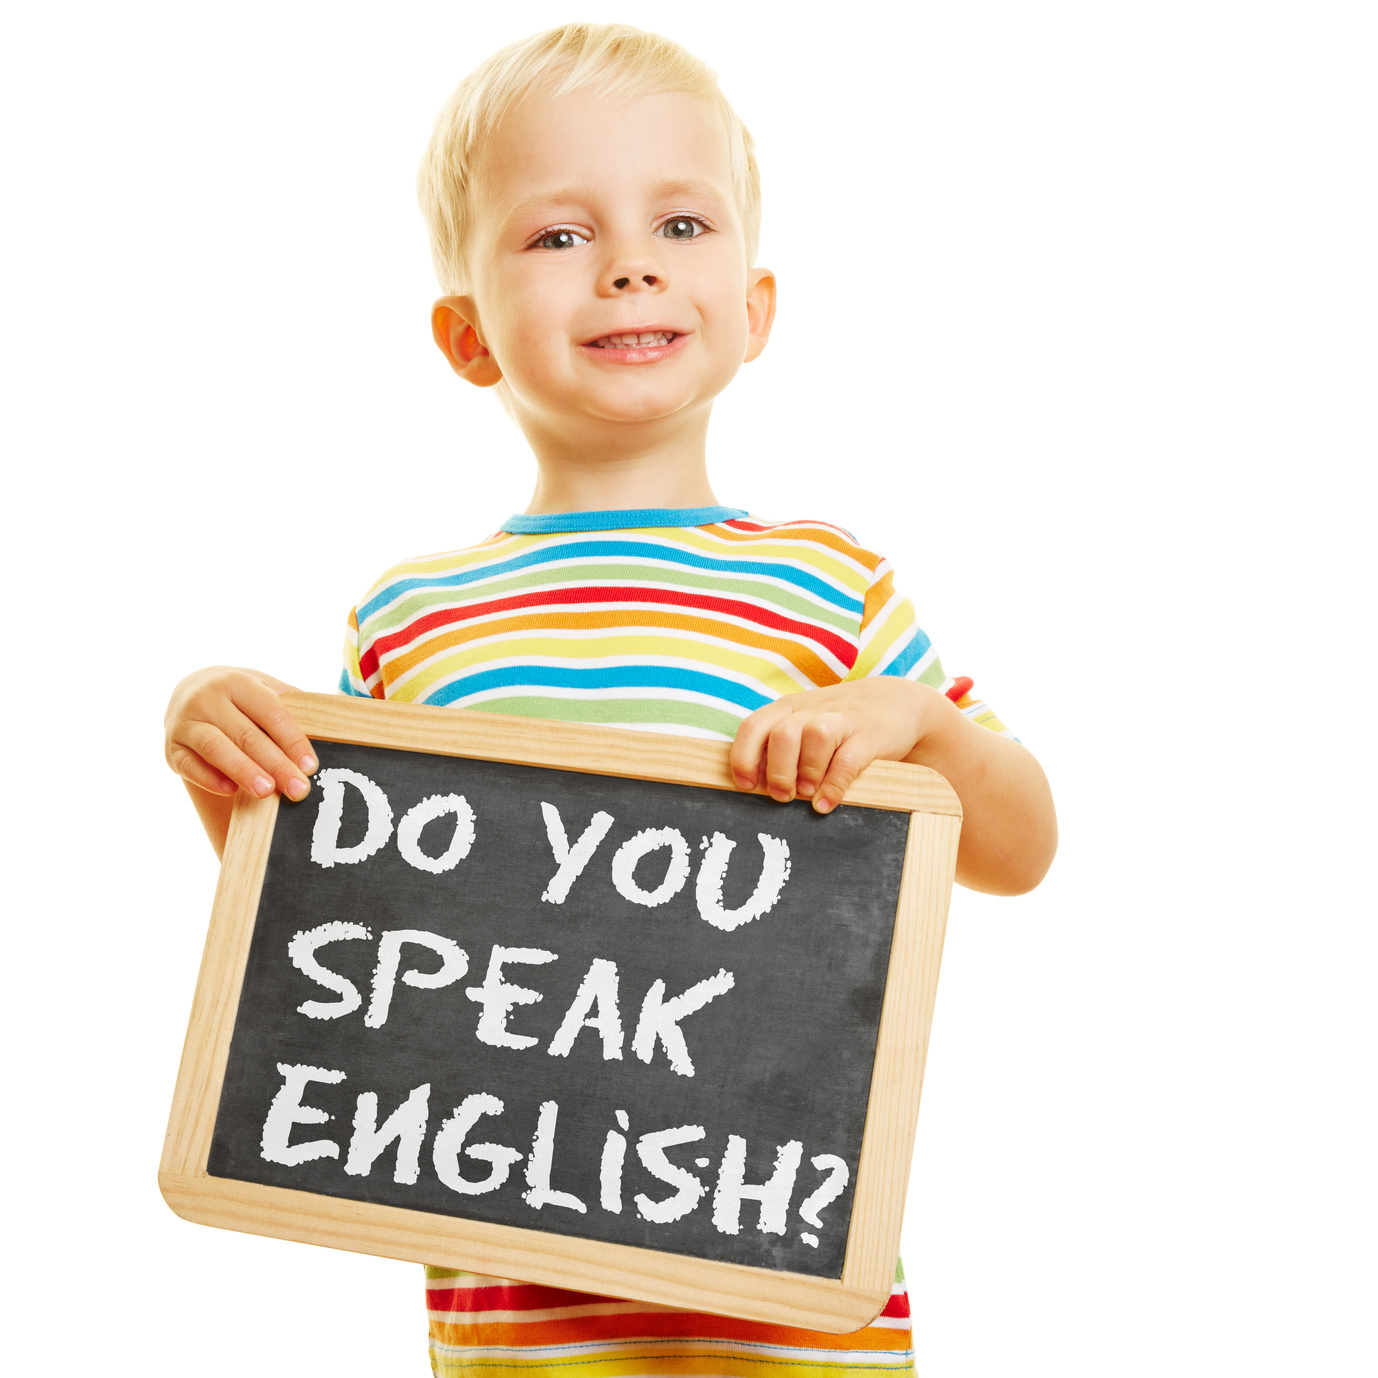 Английский язык для малышей курсы. Английский язык длядеетй. Английский язык для детей. Дети учат английский. Иностранные языки для детей.